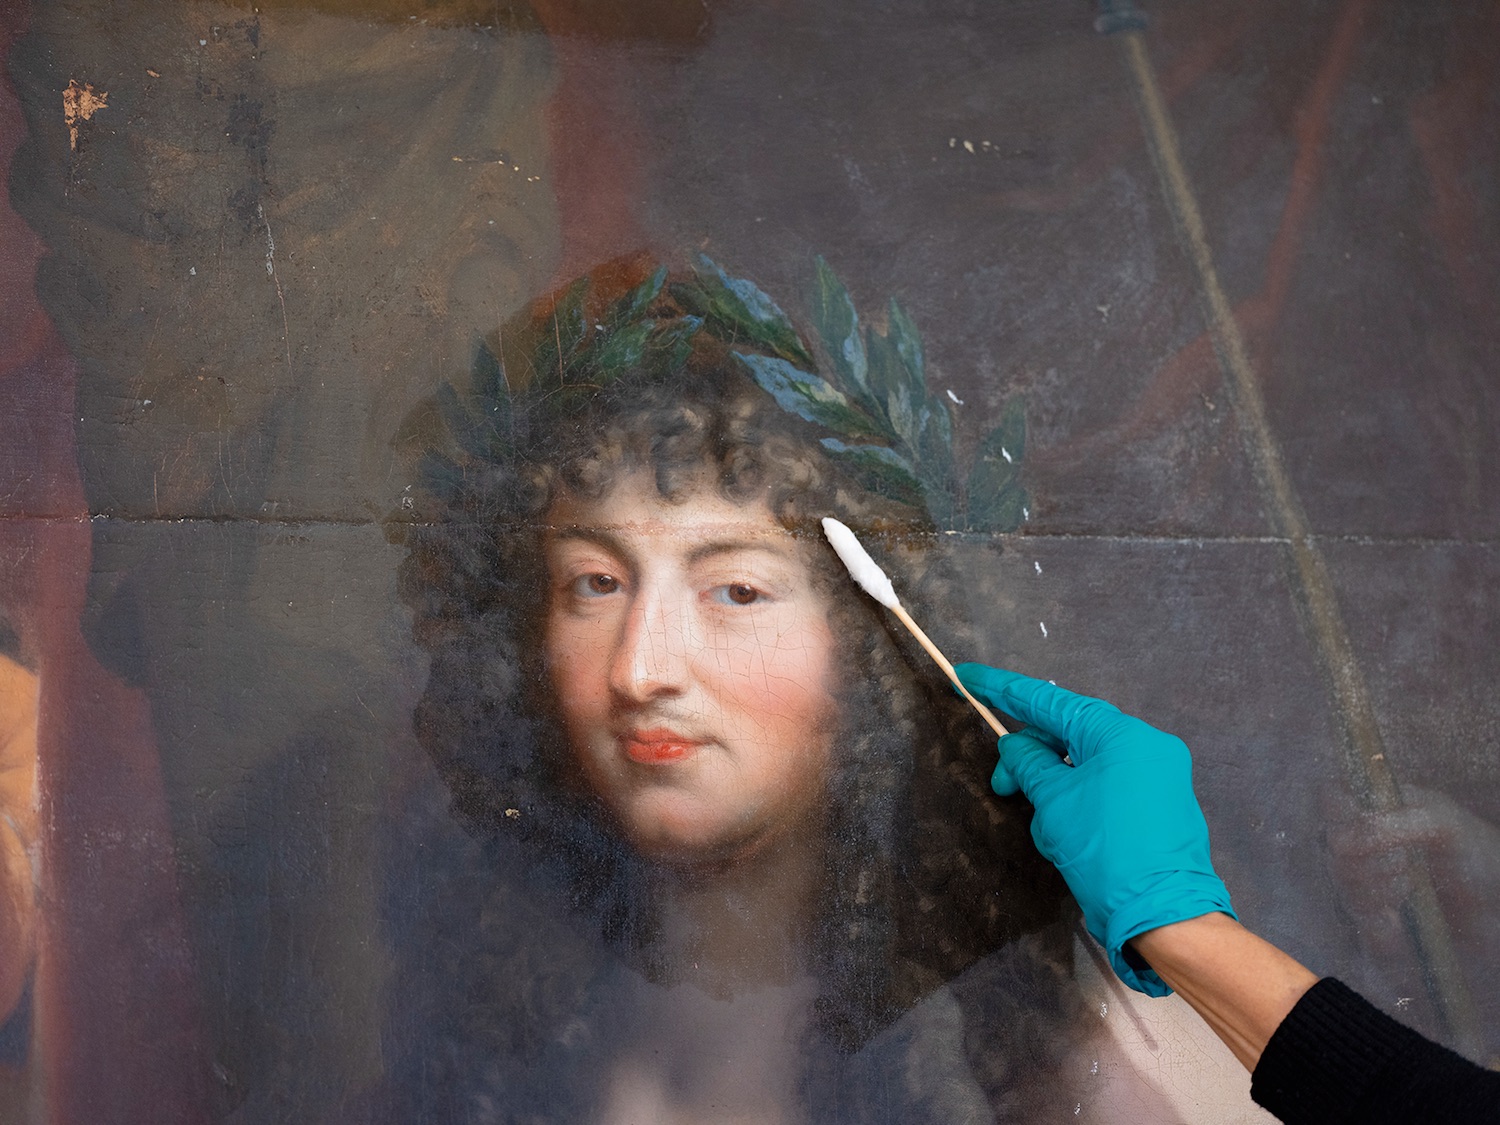 Louis XIV-Apollon en cours de restauration. © château de Versailles / T. Garnier